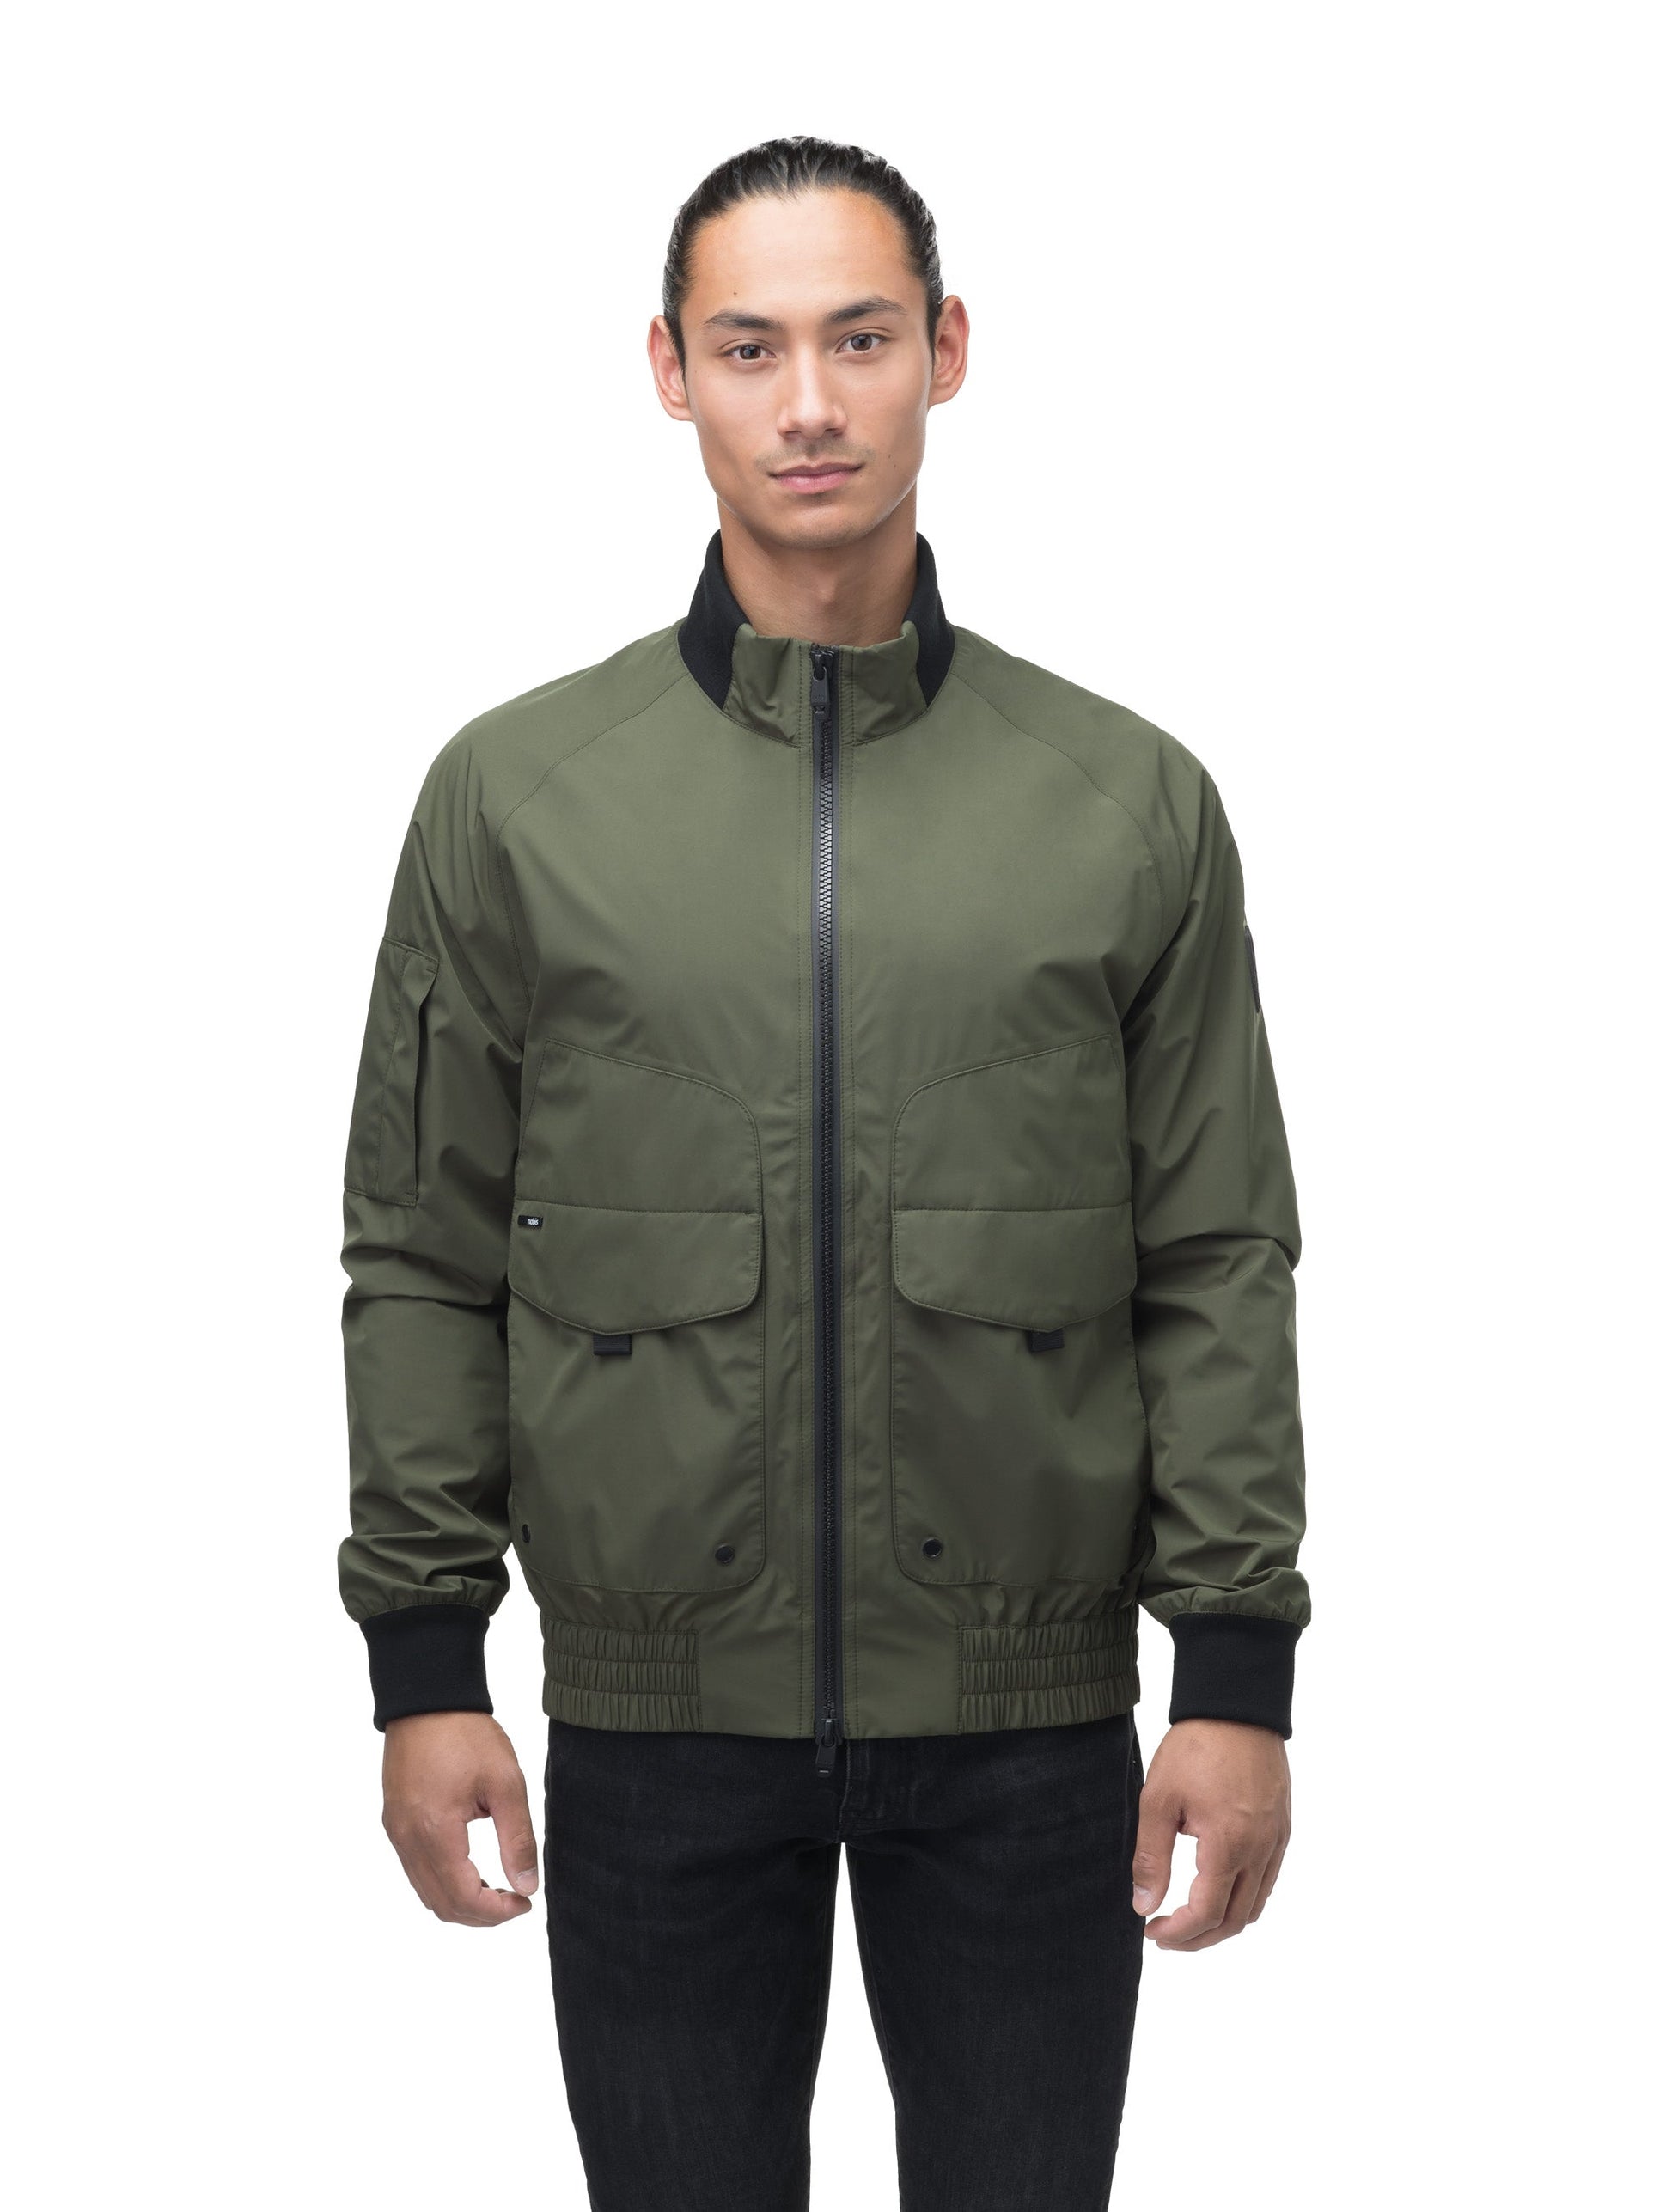 Men's hip length waterproof bomber jacket with 2-way zipper in Fatigue